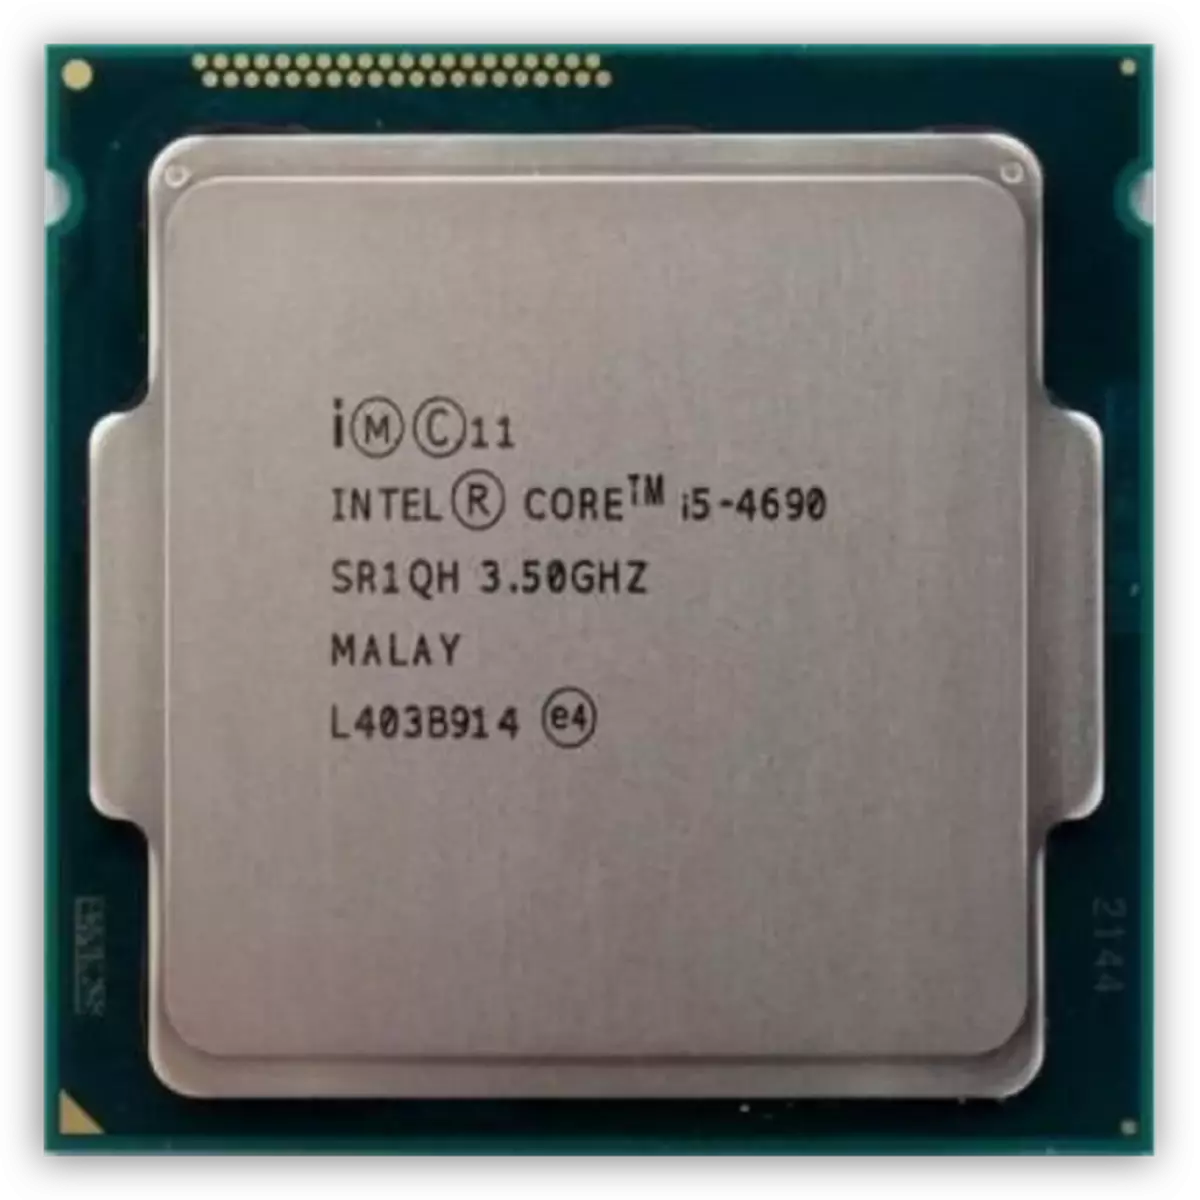 Core i5-4690 prosessor på Haswell arkitektur